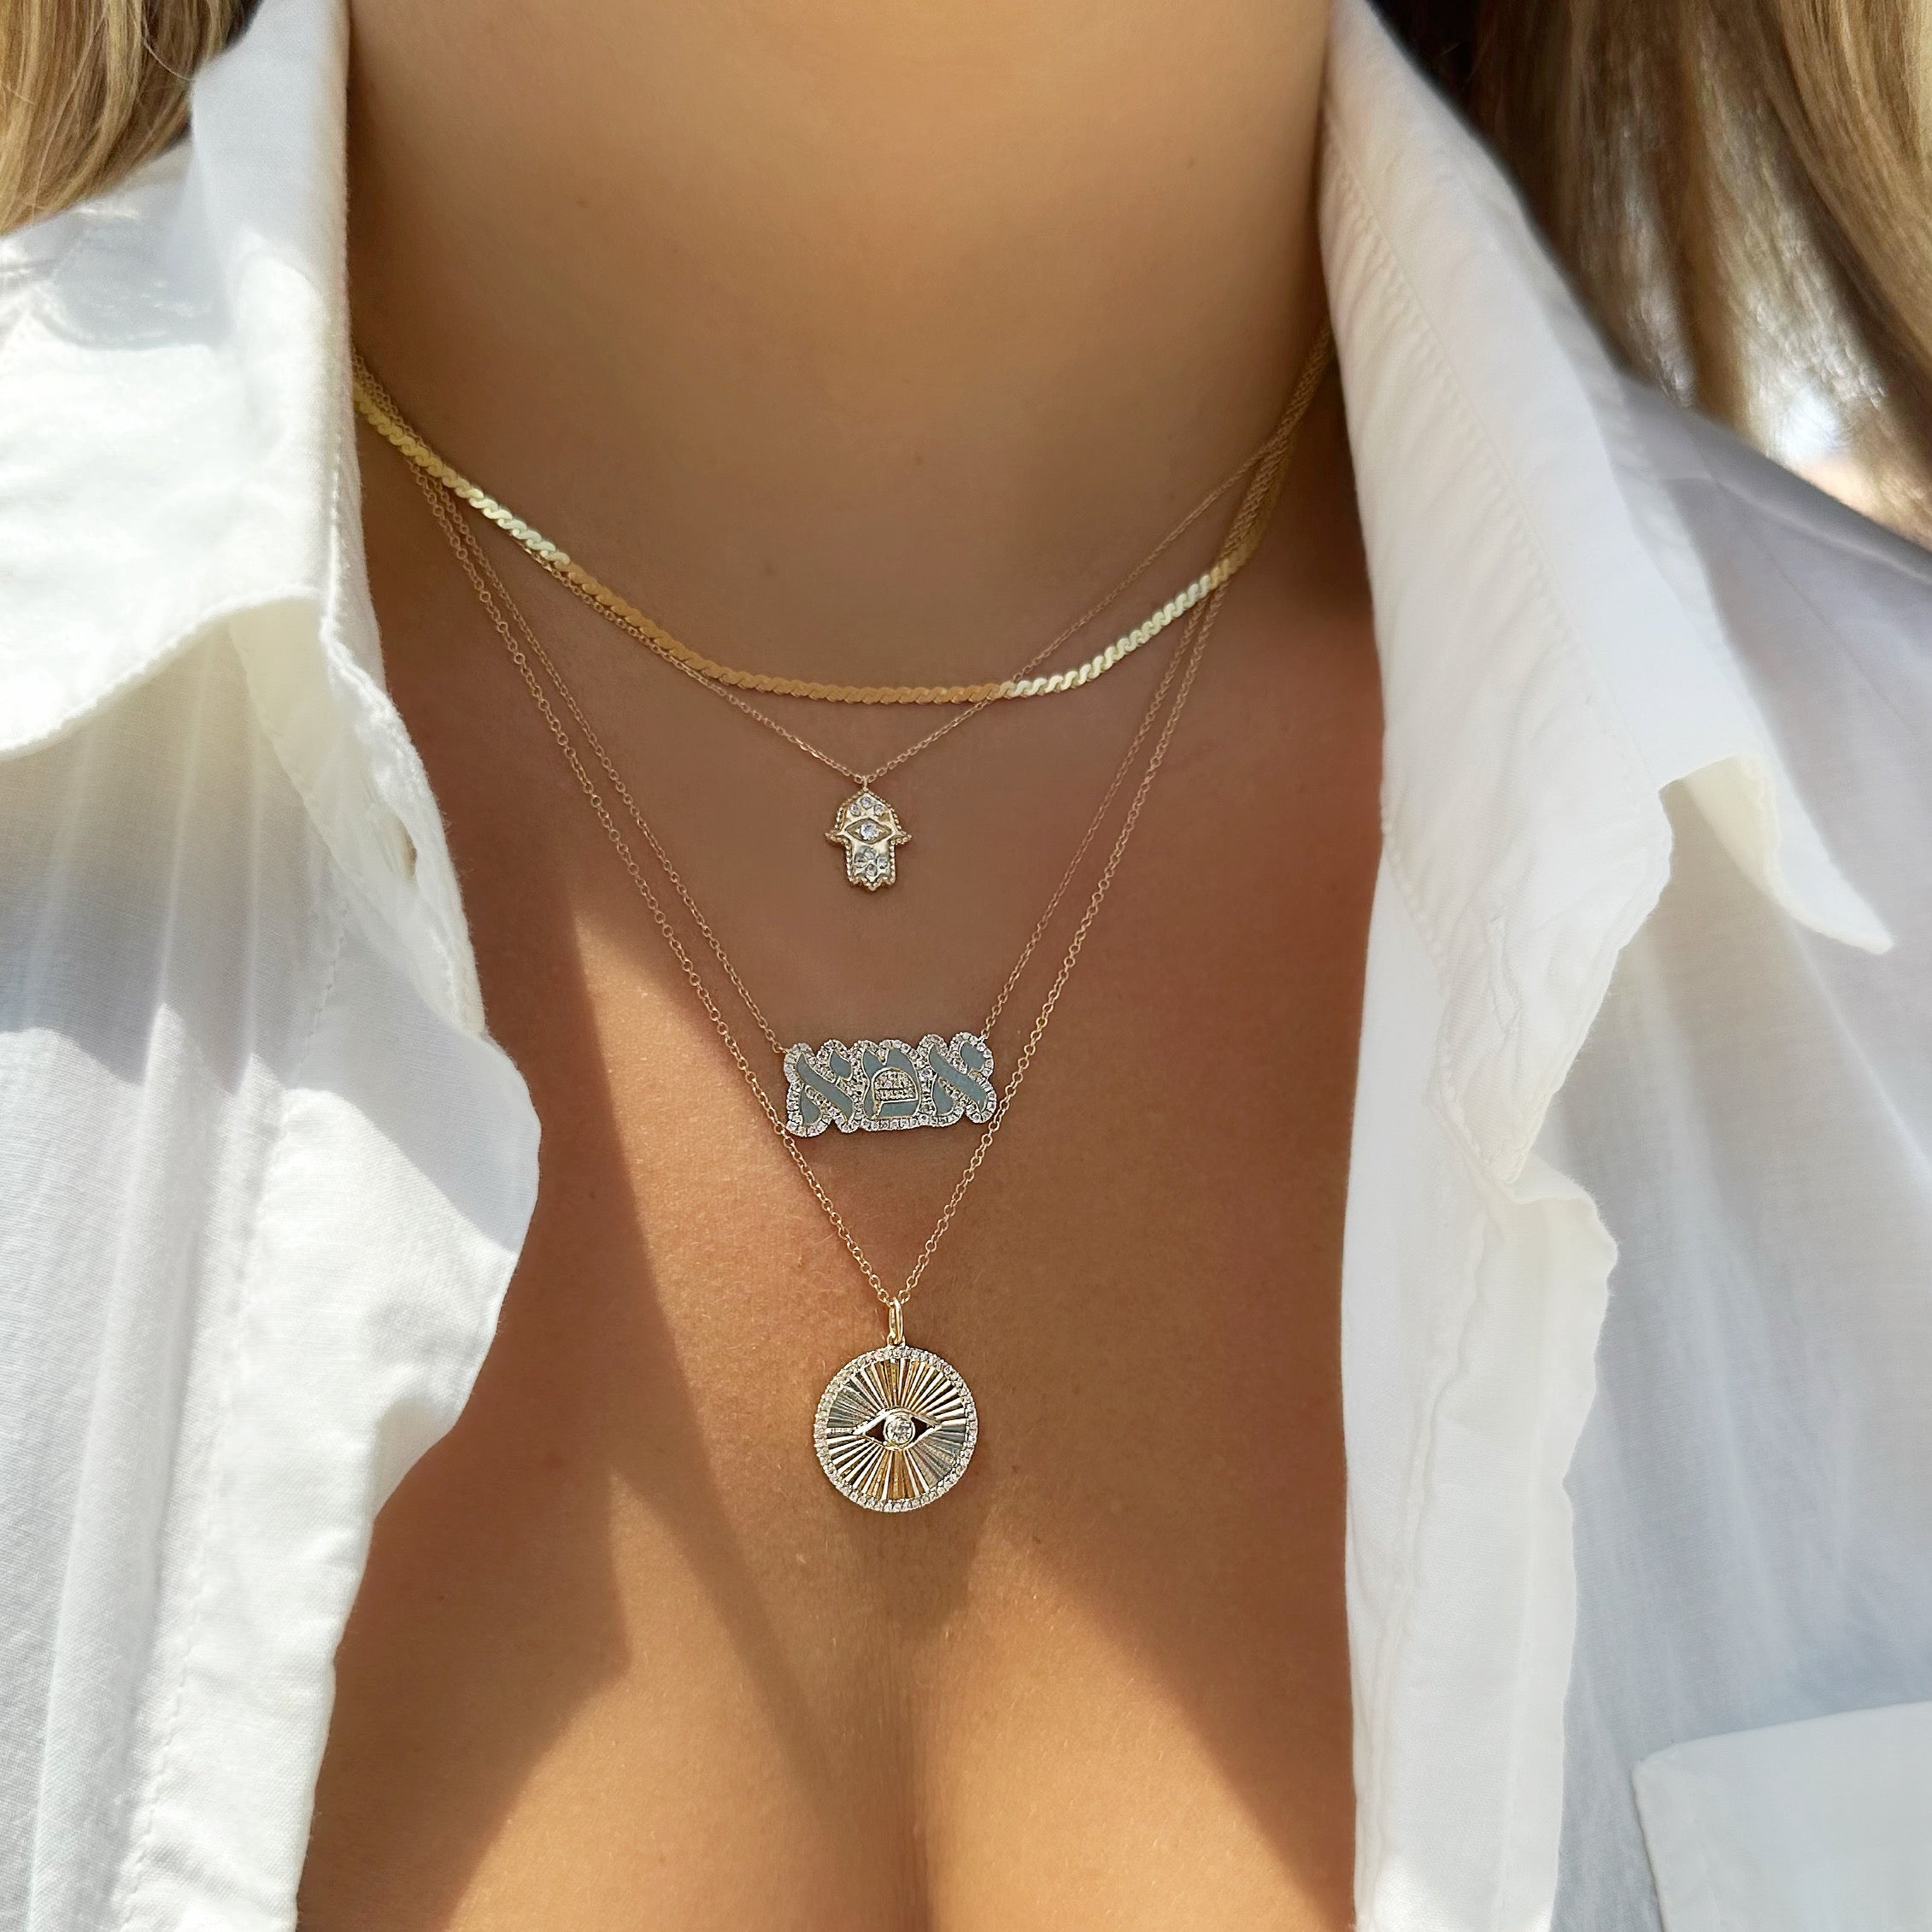 14K Gold Diamond Accented Hamsa Necklace Necklaces by Izakov Diamonds + Fine Jewelry | Izakov